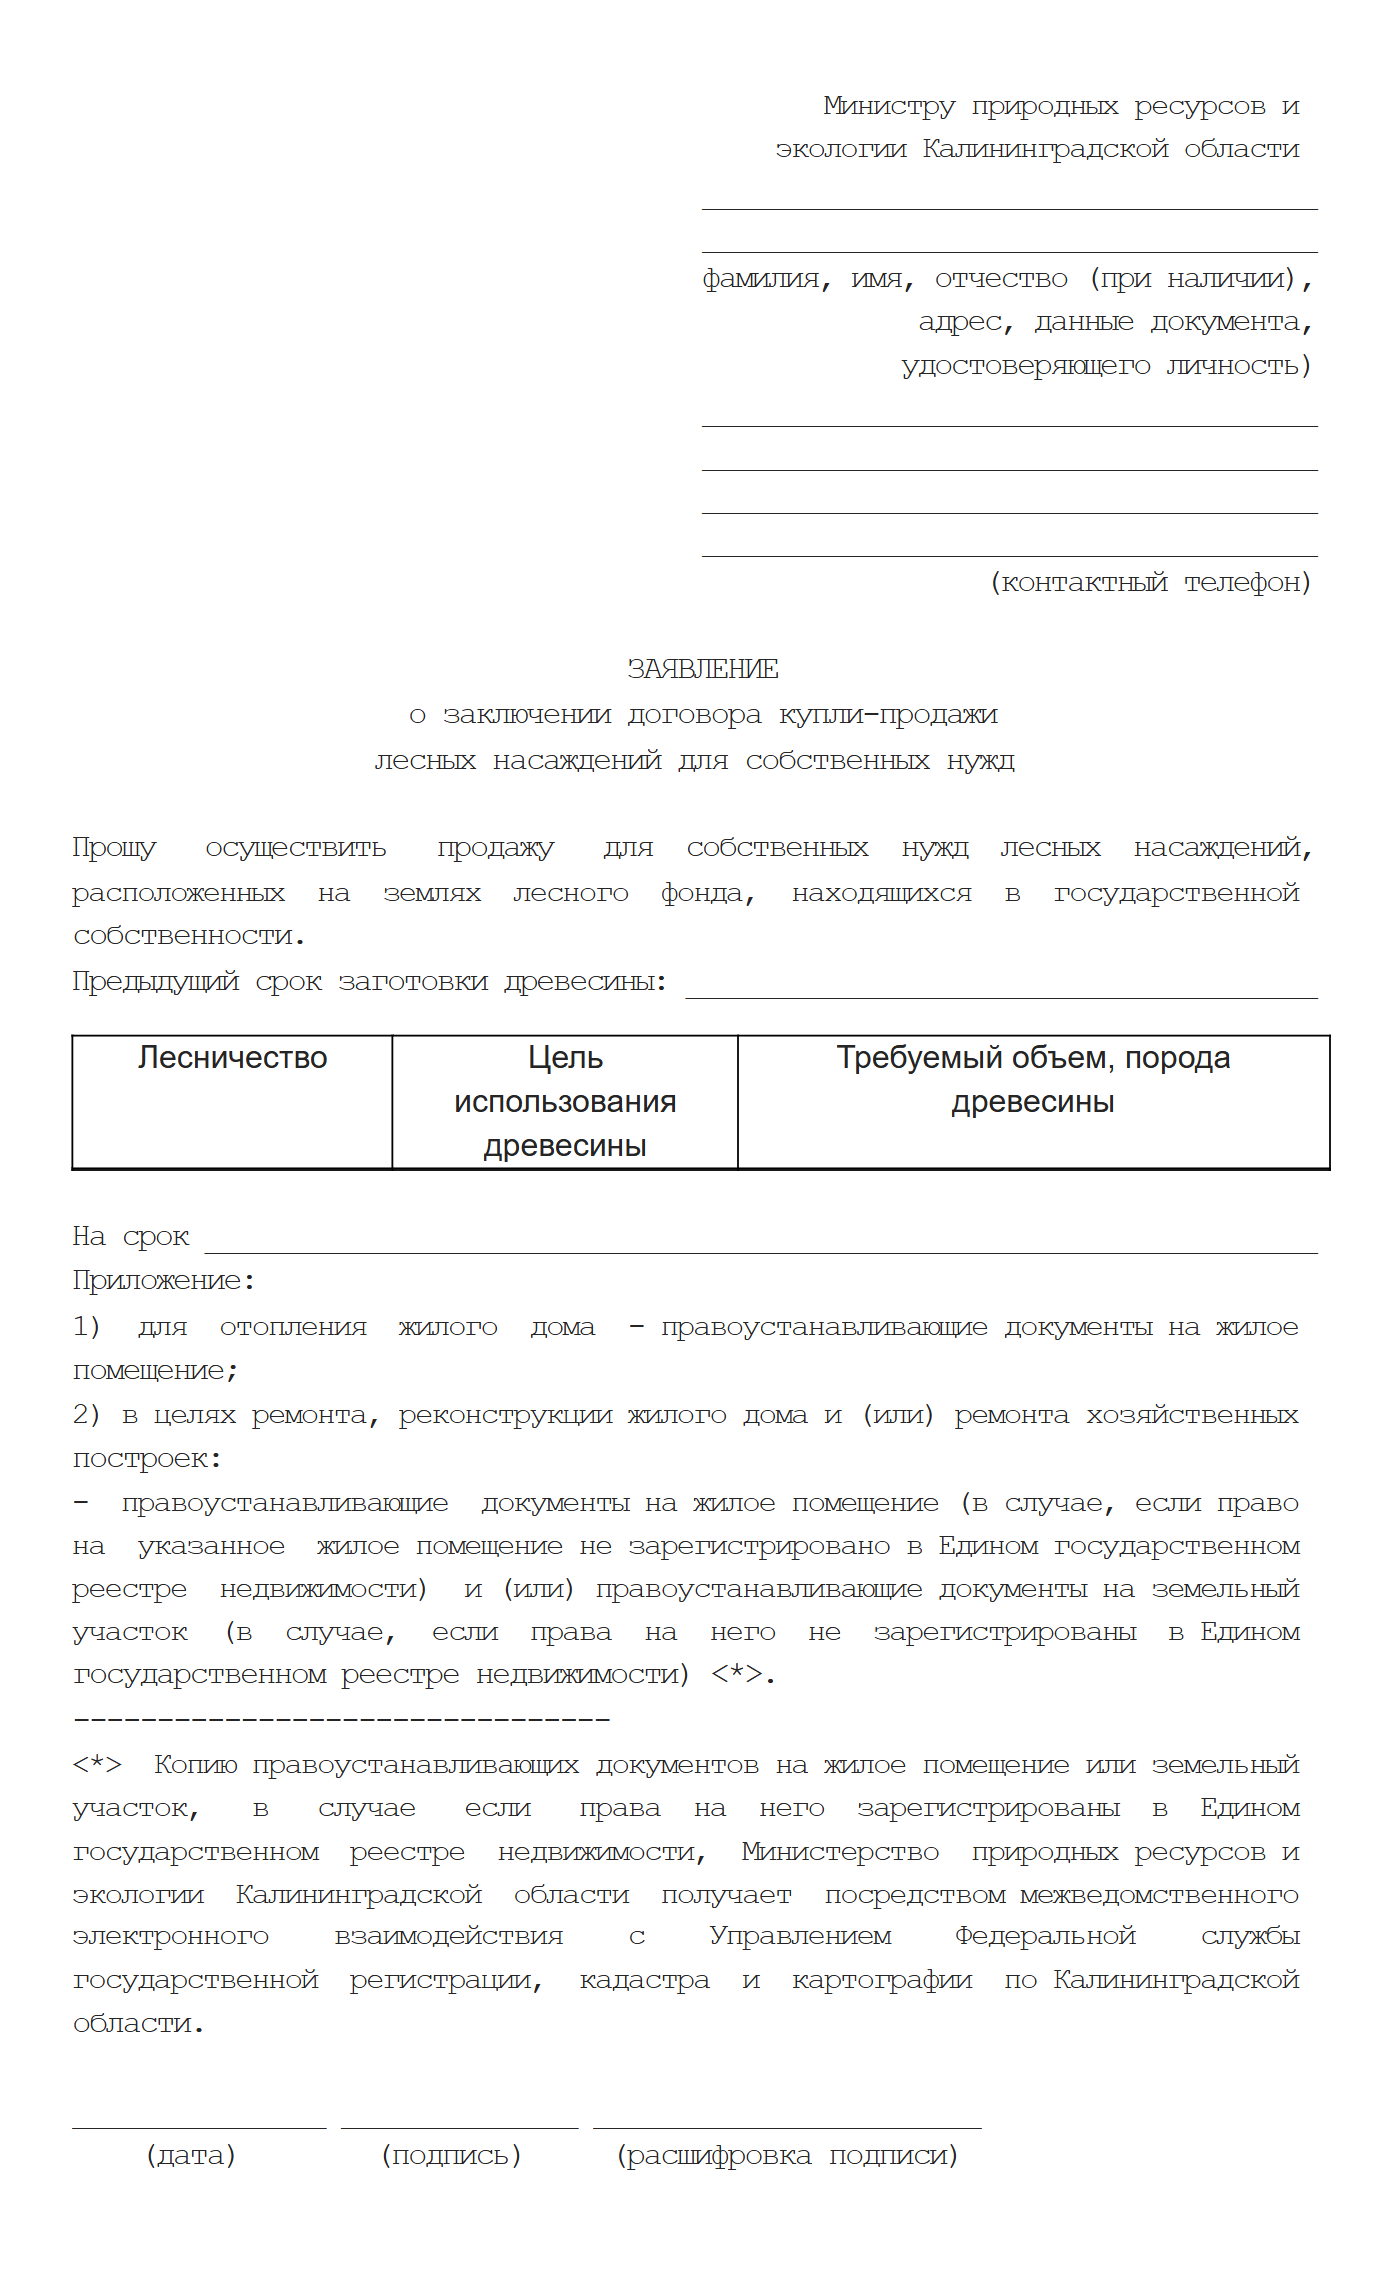 Форма заявления о заключении договора купли-продажи лесных насаждений для собственных нужд в Калининградской области